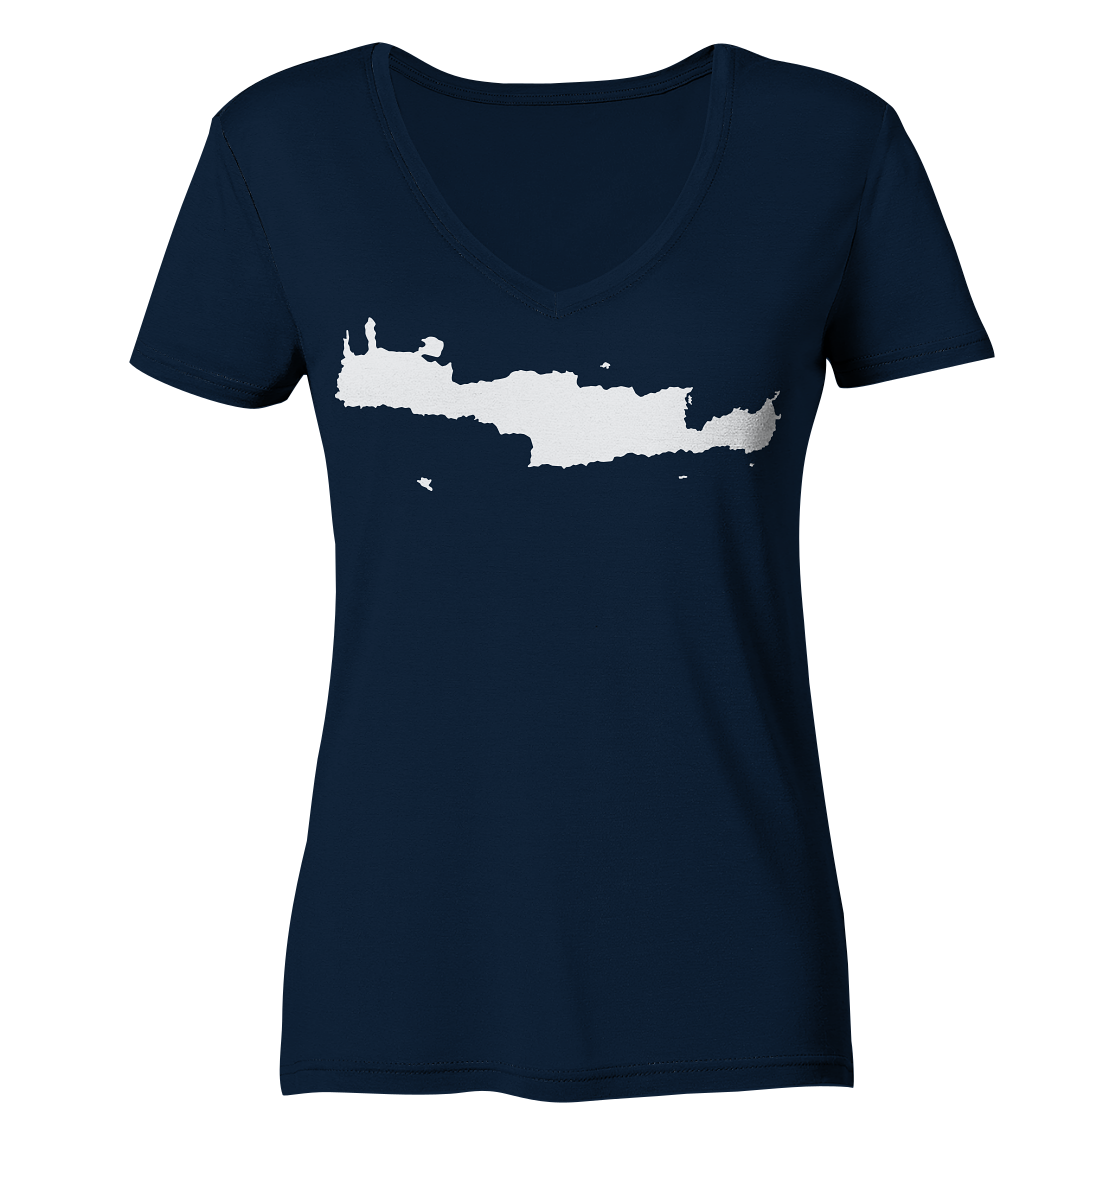 Kreta Insel Silhouette - Ladies Organic V-Neck Shirt